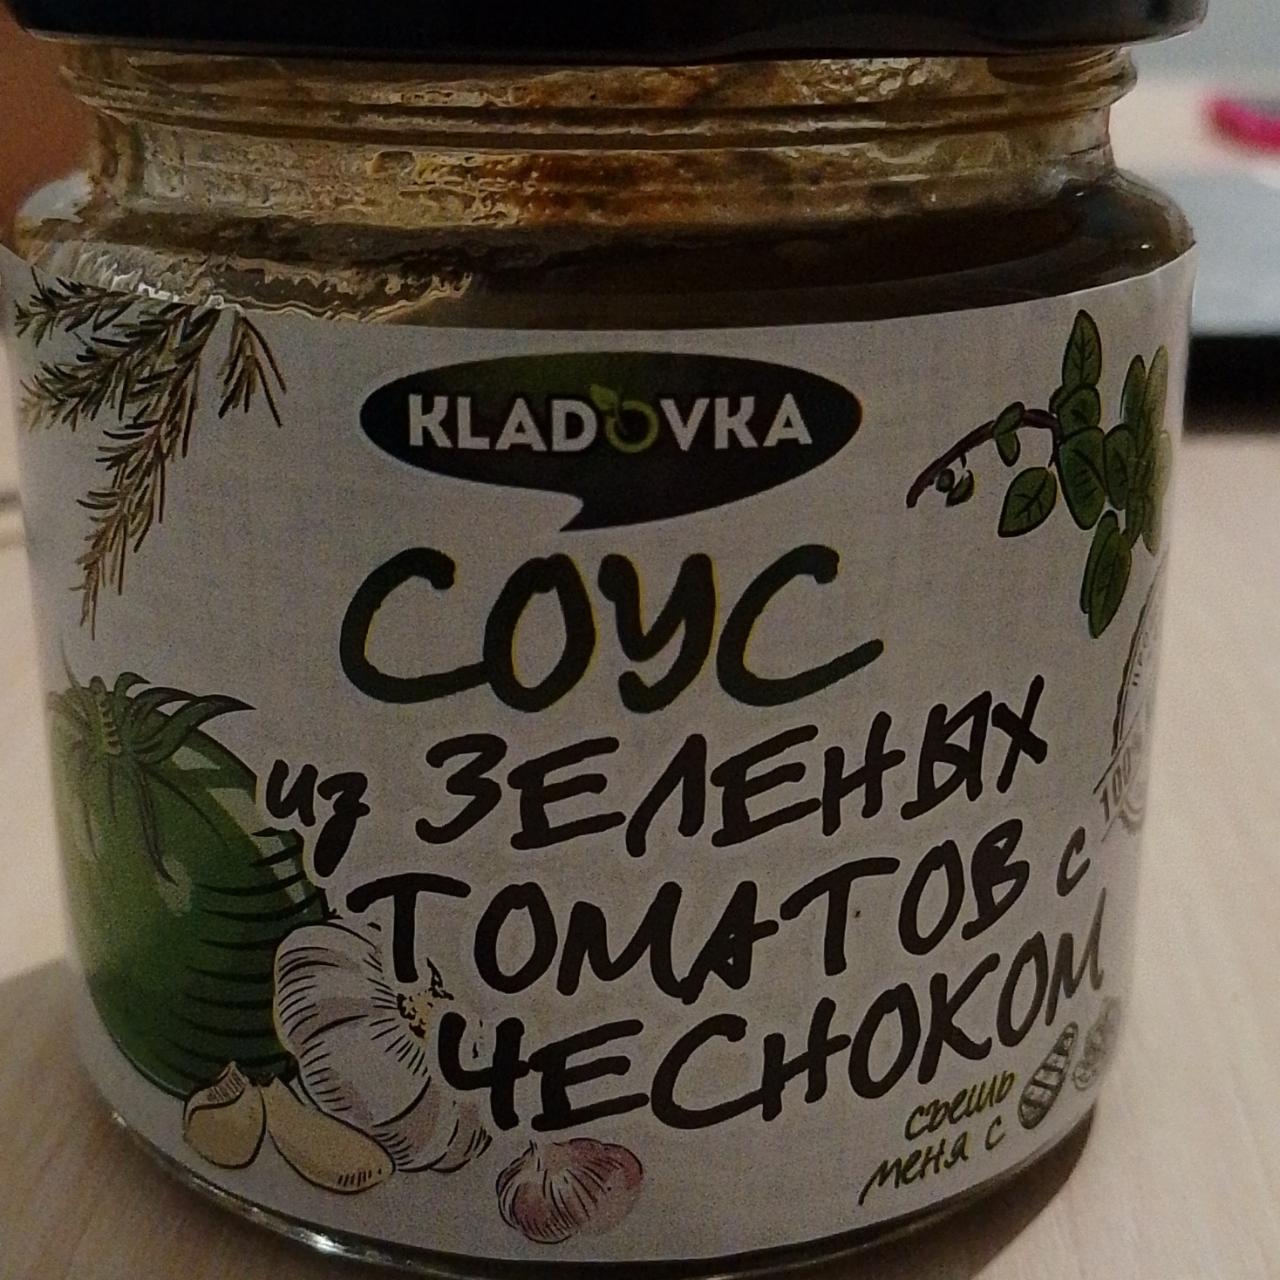 Фото - Соус из зелëных томатов с чесноком Kladovka